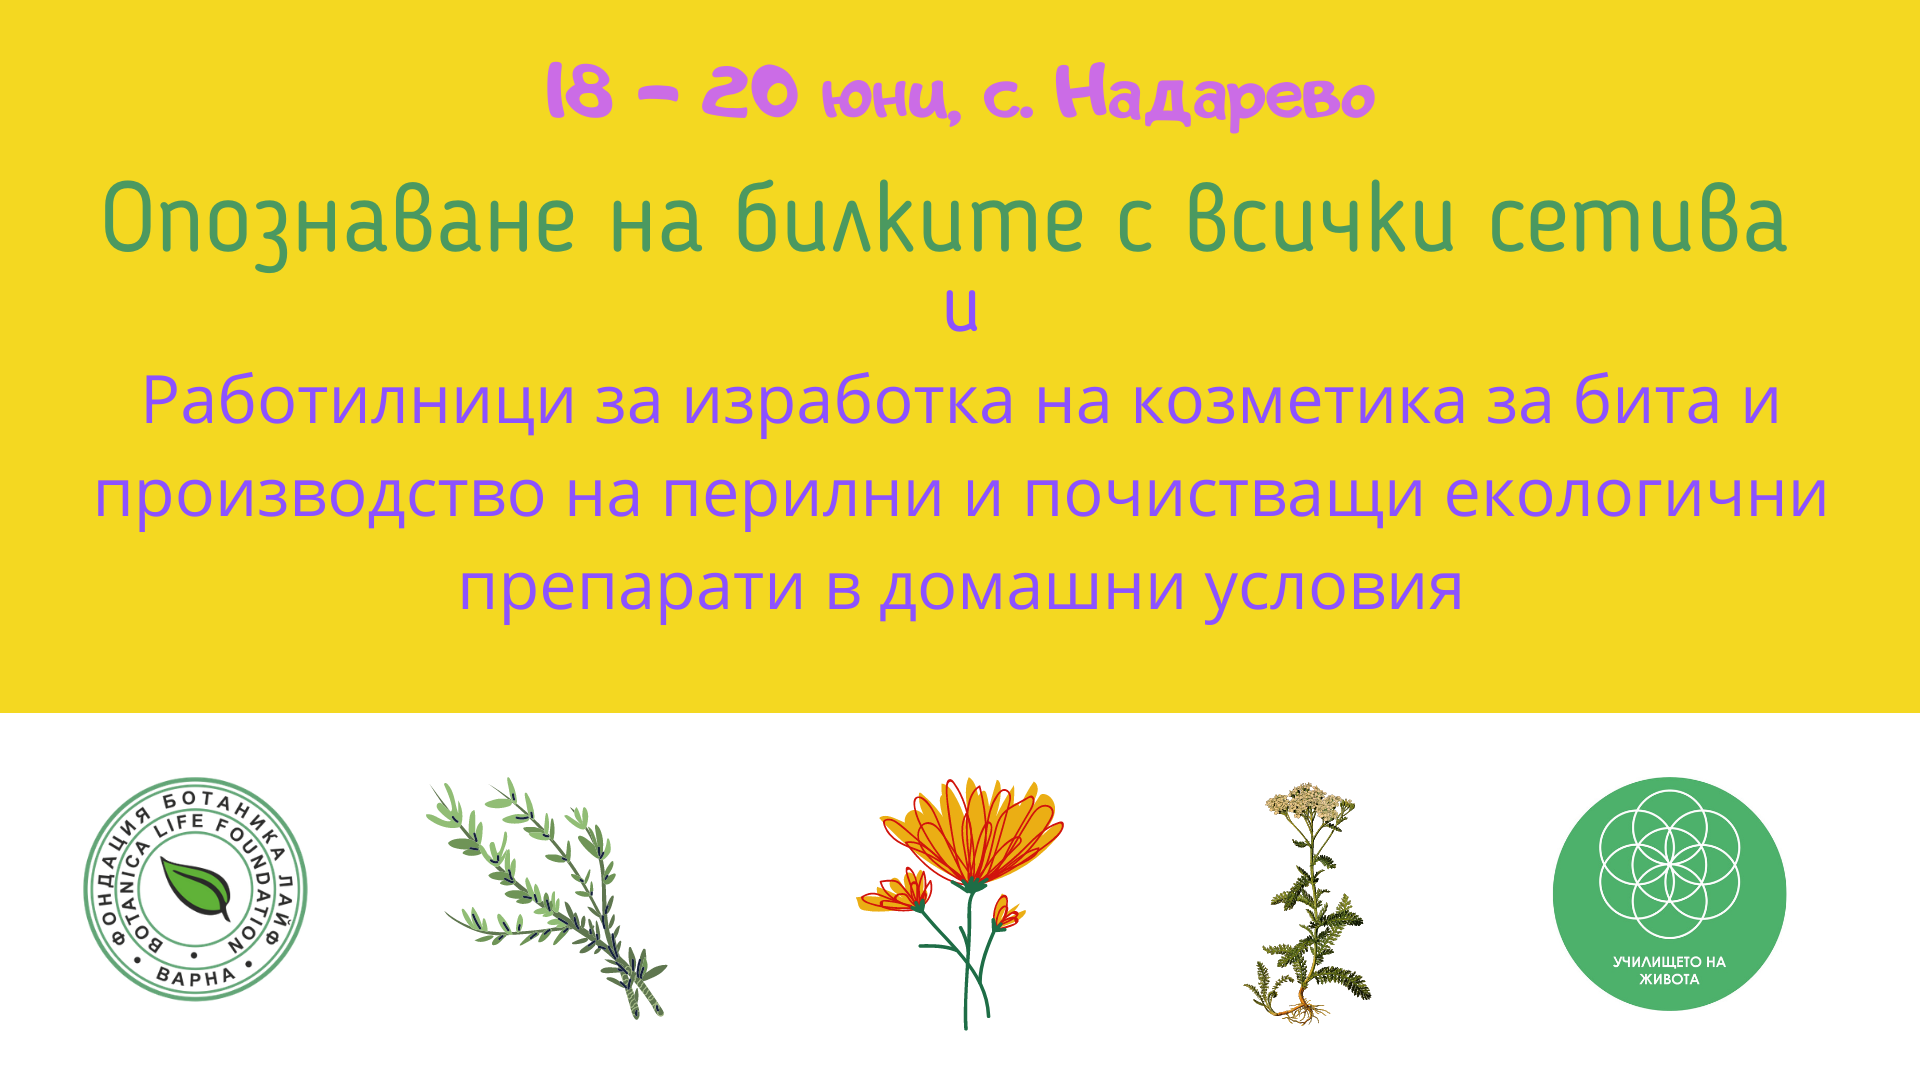 Билкова работилница - Опознаване на билките с всички сетива - 18-20 юни